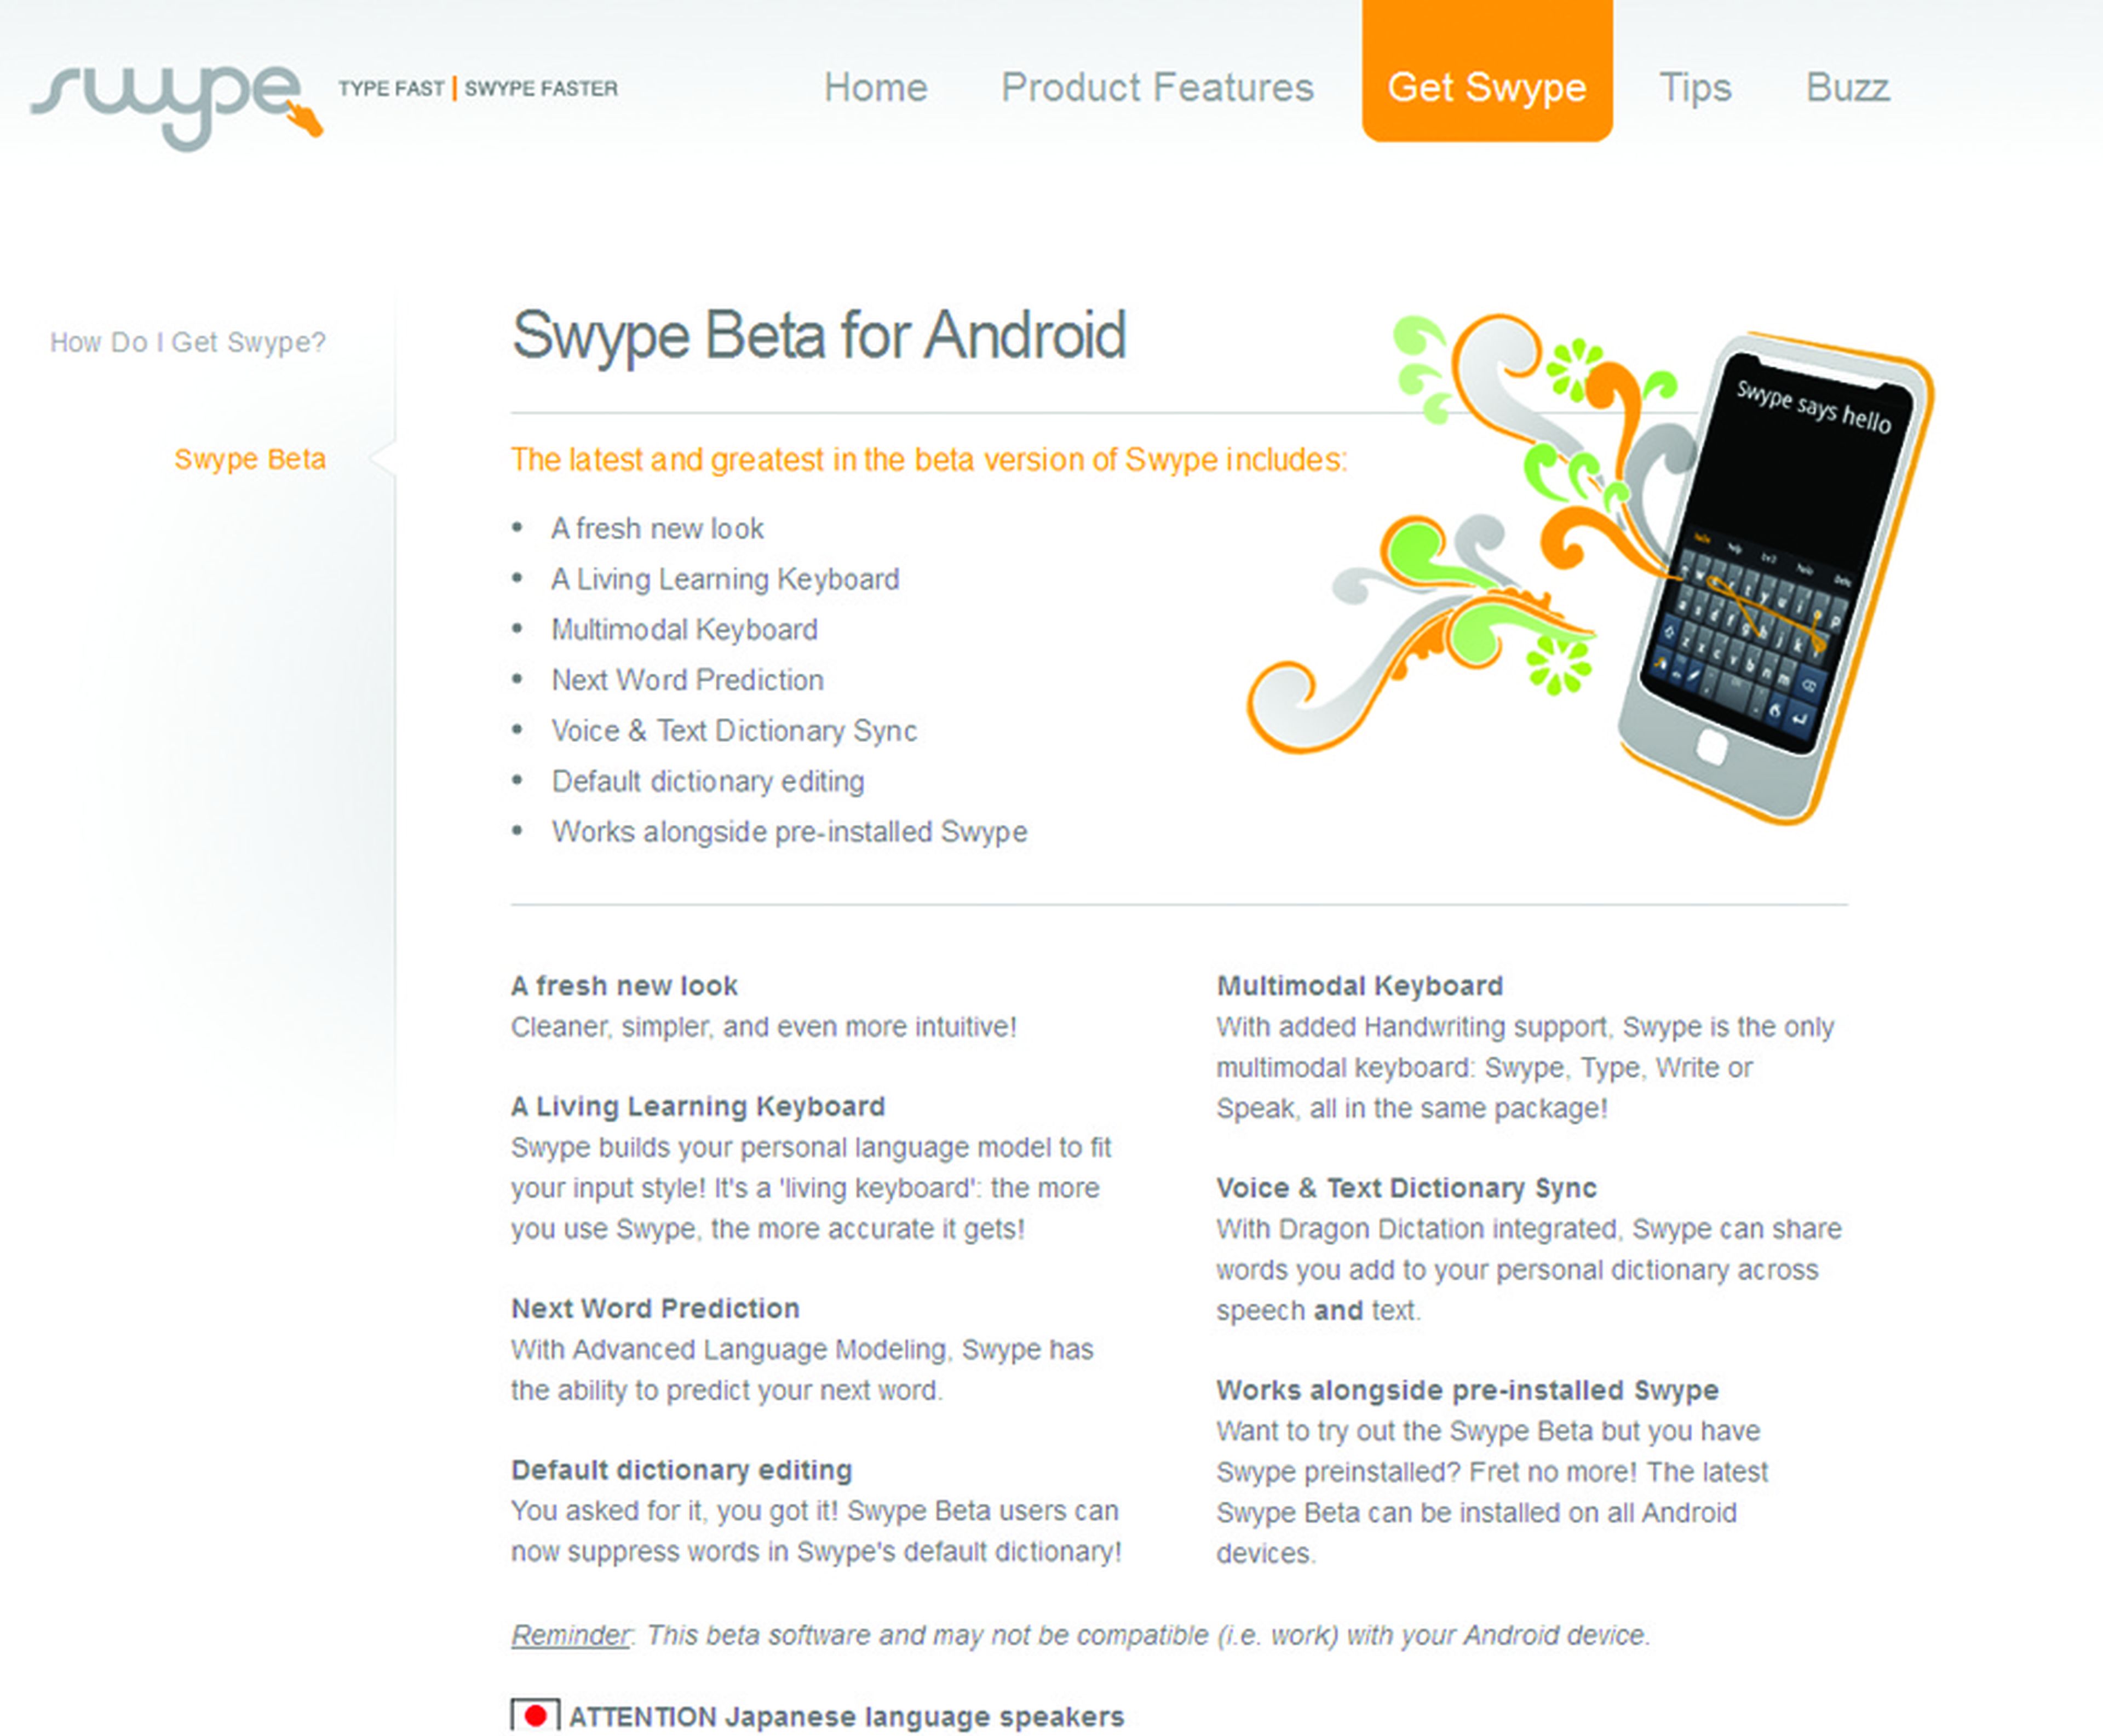 Página de Swype para descargar la app gratuita